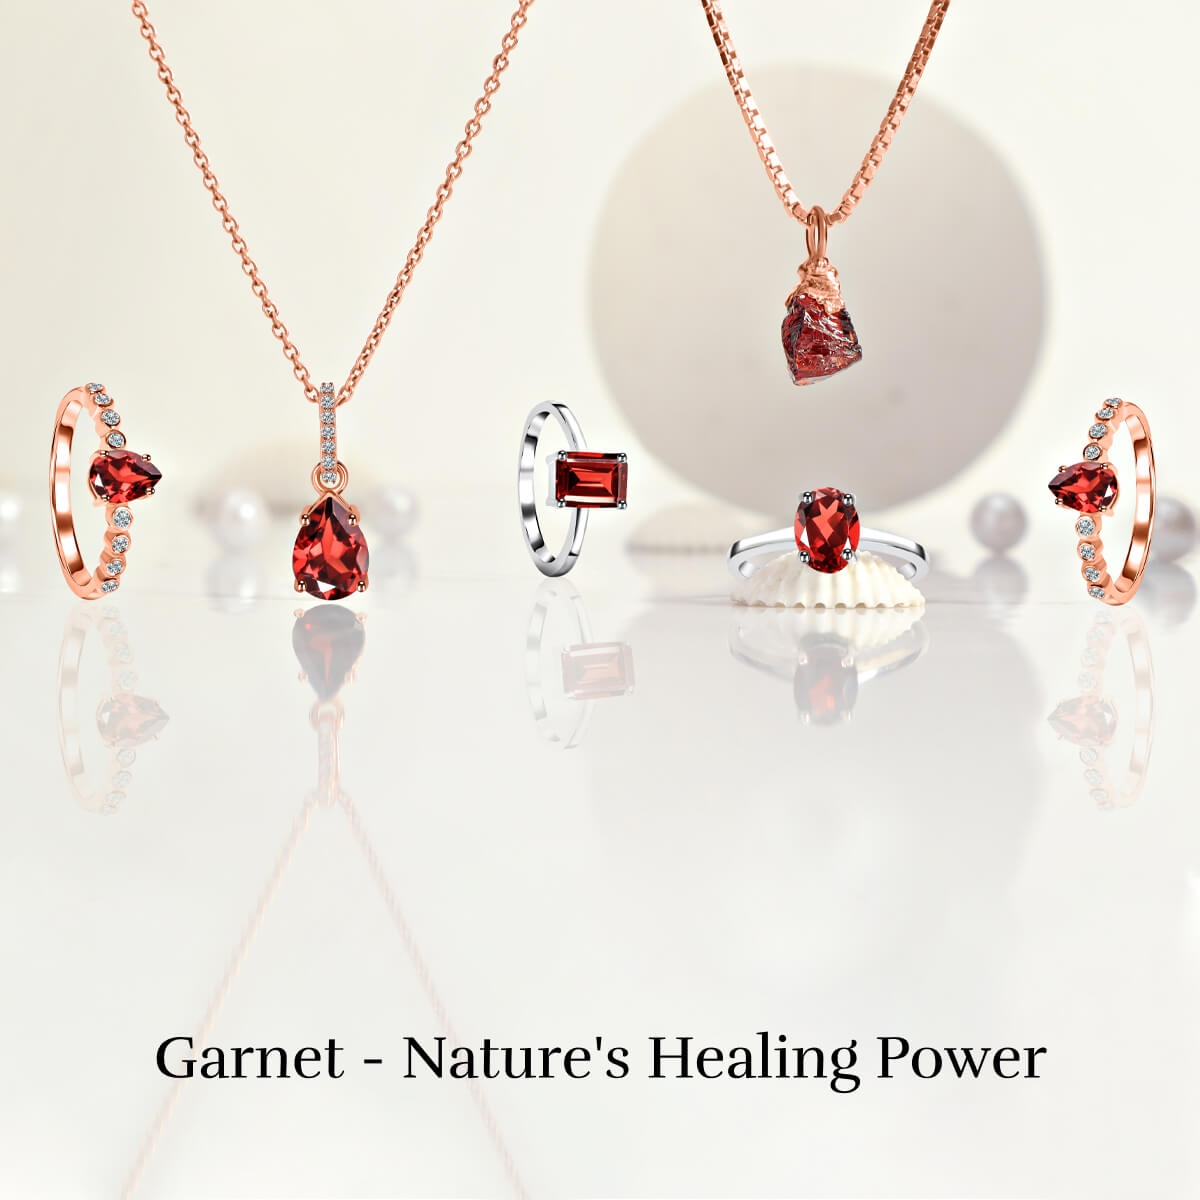 Healing properties of garnet